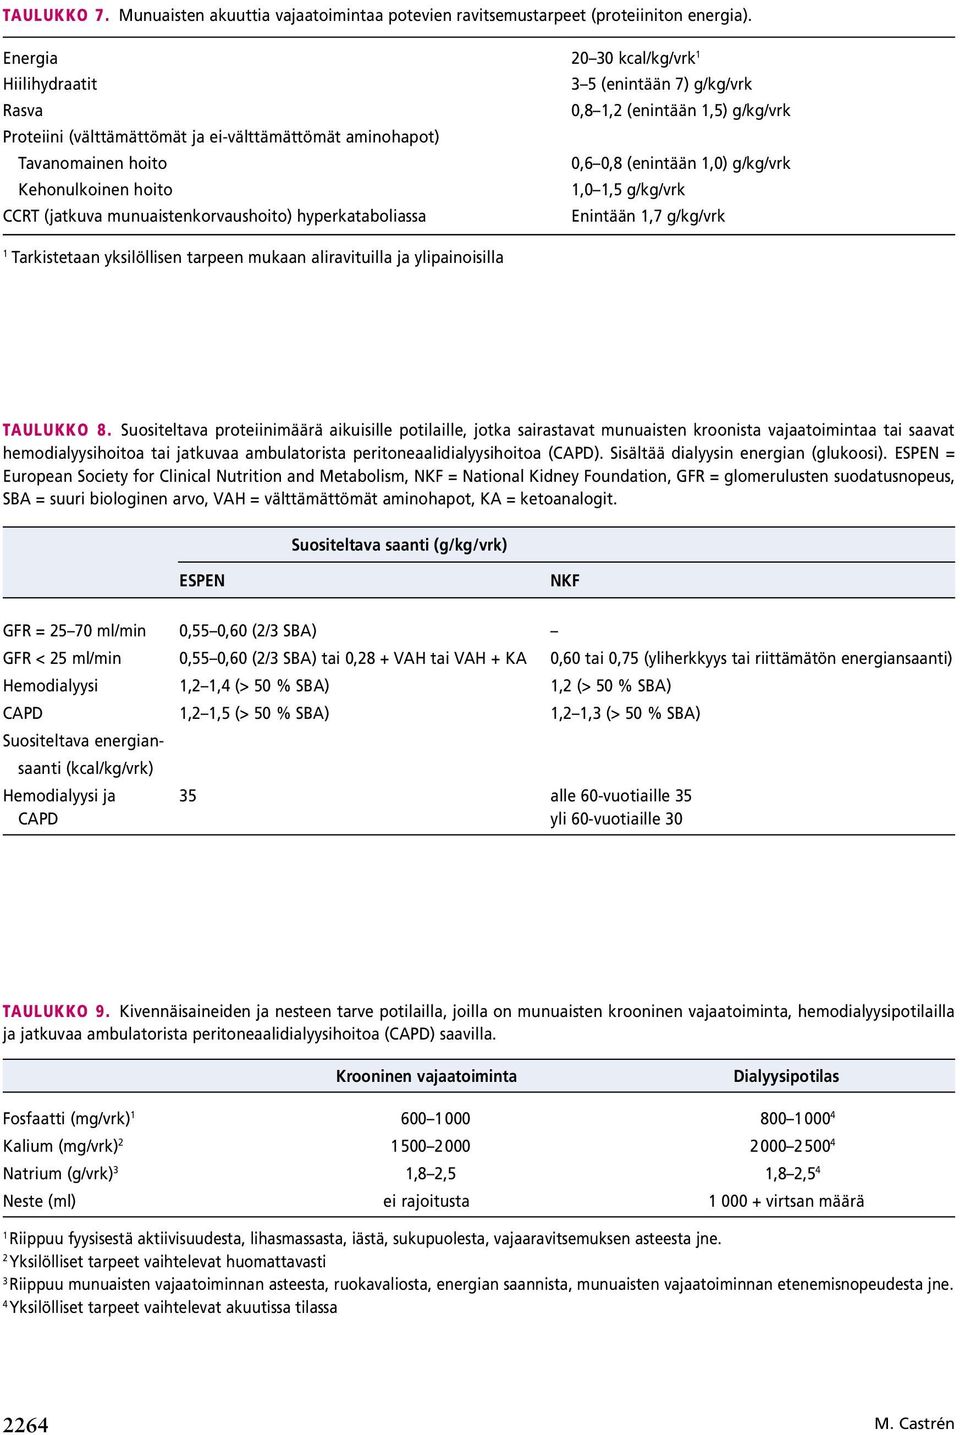 (enintään 1,0) g/kg/vrk Kehonulkoinen hoito 1,0 1,5 g/kg/vrk RT (jatkuva munuaistenkorvaushoito) hyperkataboliassa Enintään 1,7 g/kg/vrk 1 Tarkistetaan yksilöllisen tarpeen mukaan aliravituilla ja